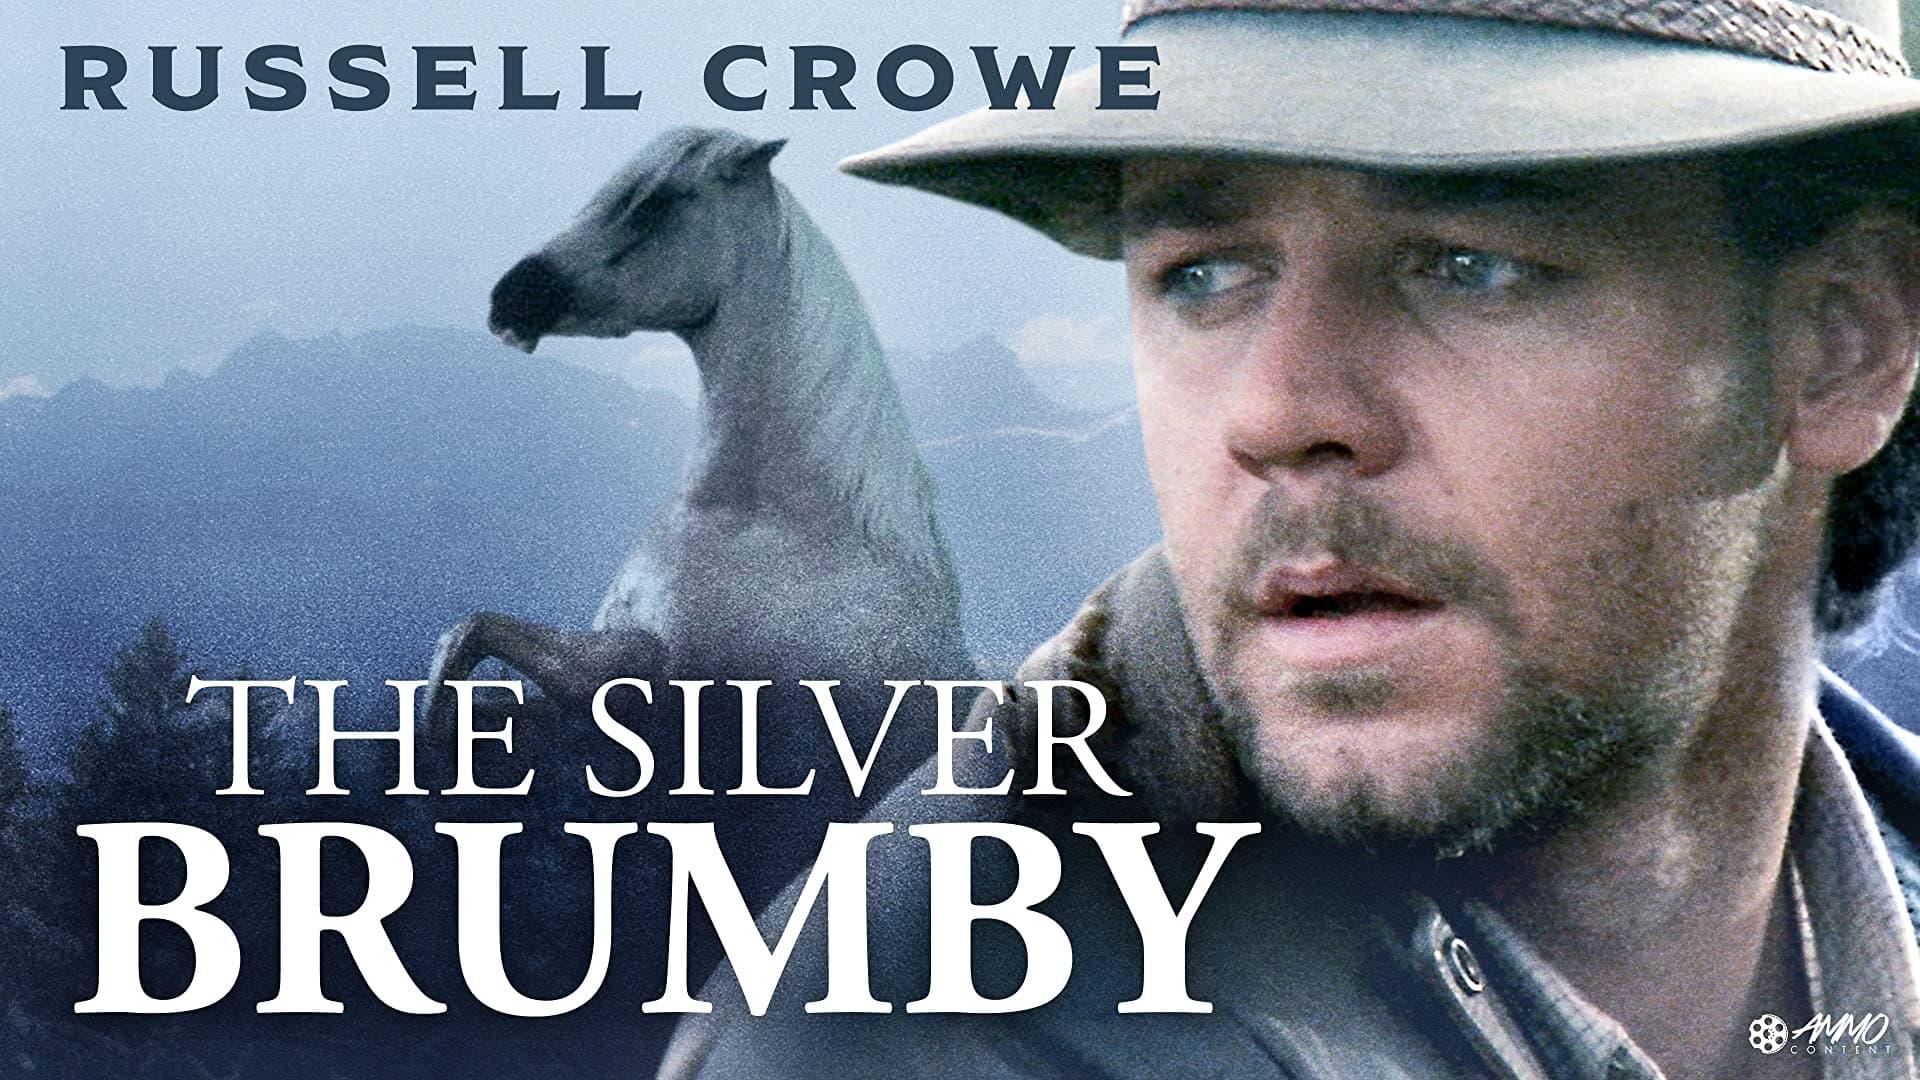 La leyenda de Silver Brumby